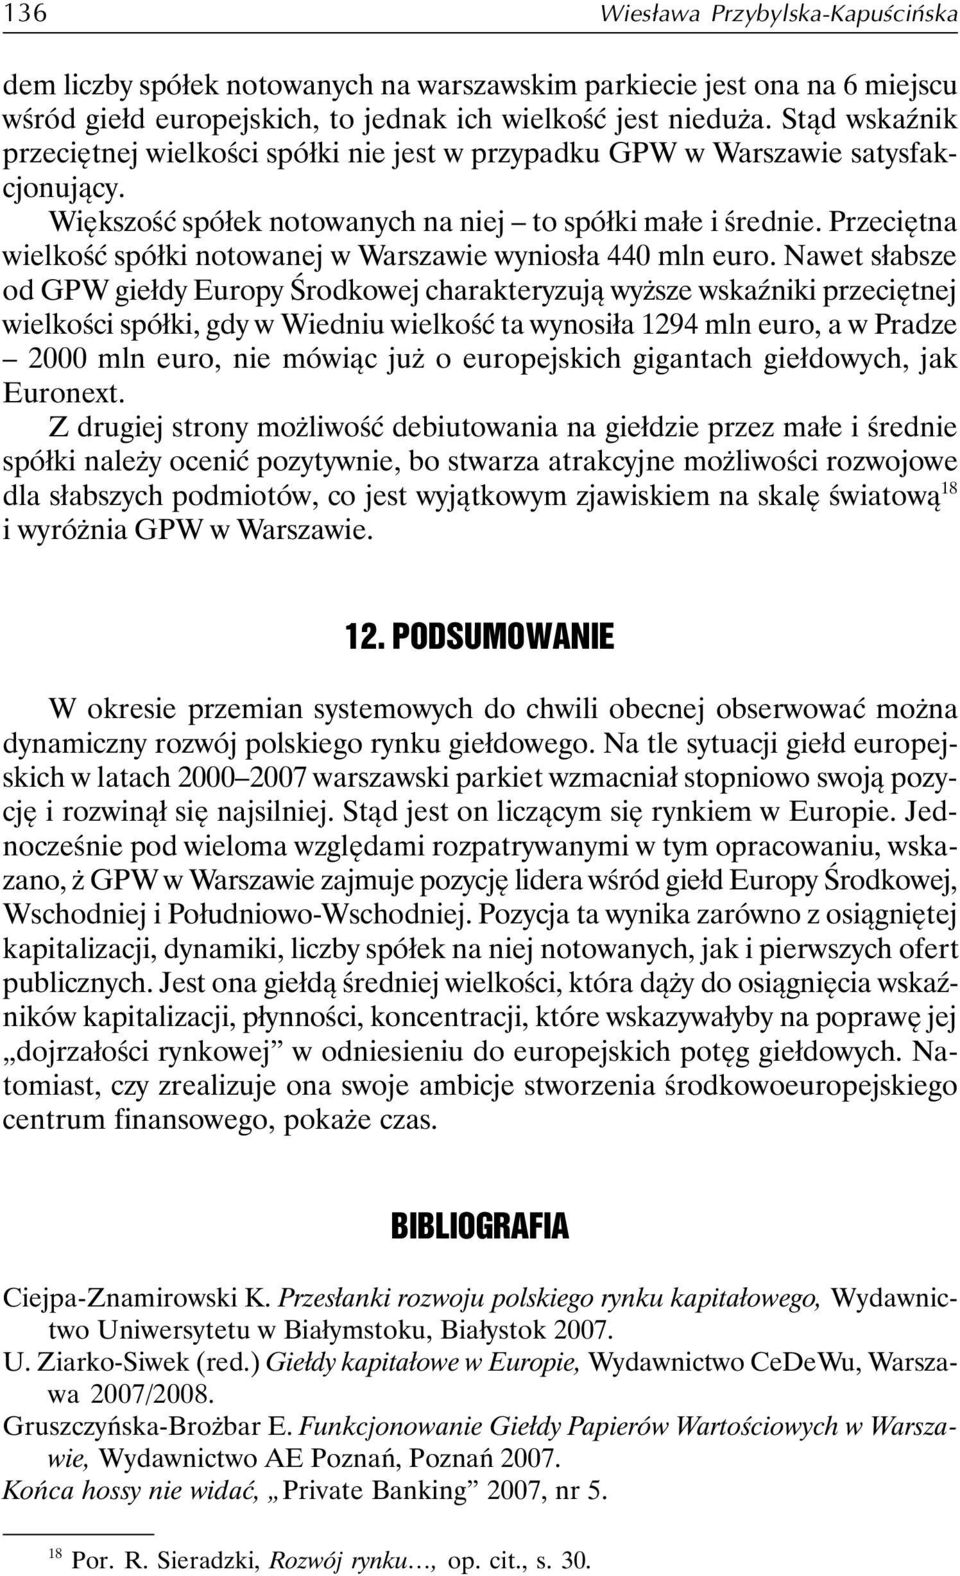 Przeciętna wielkość spółki notowanej w Warszawie wyniosła 440 mln euro.